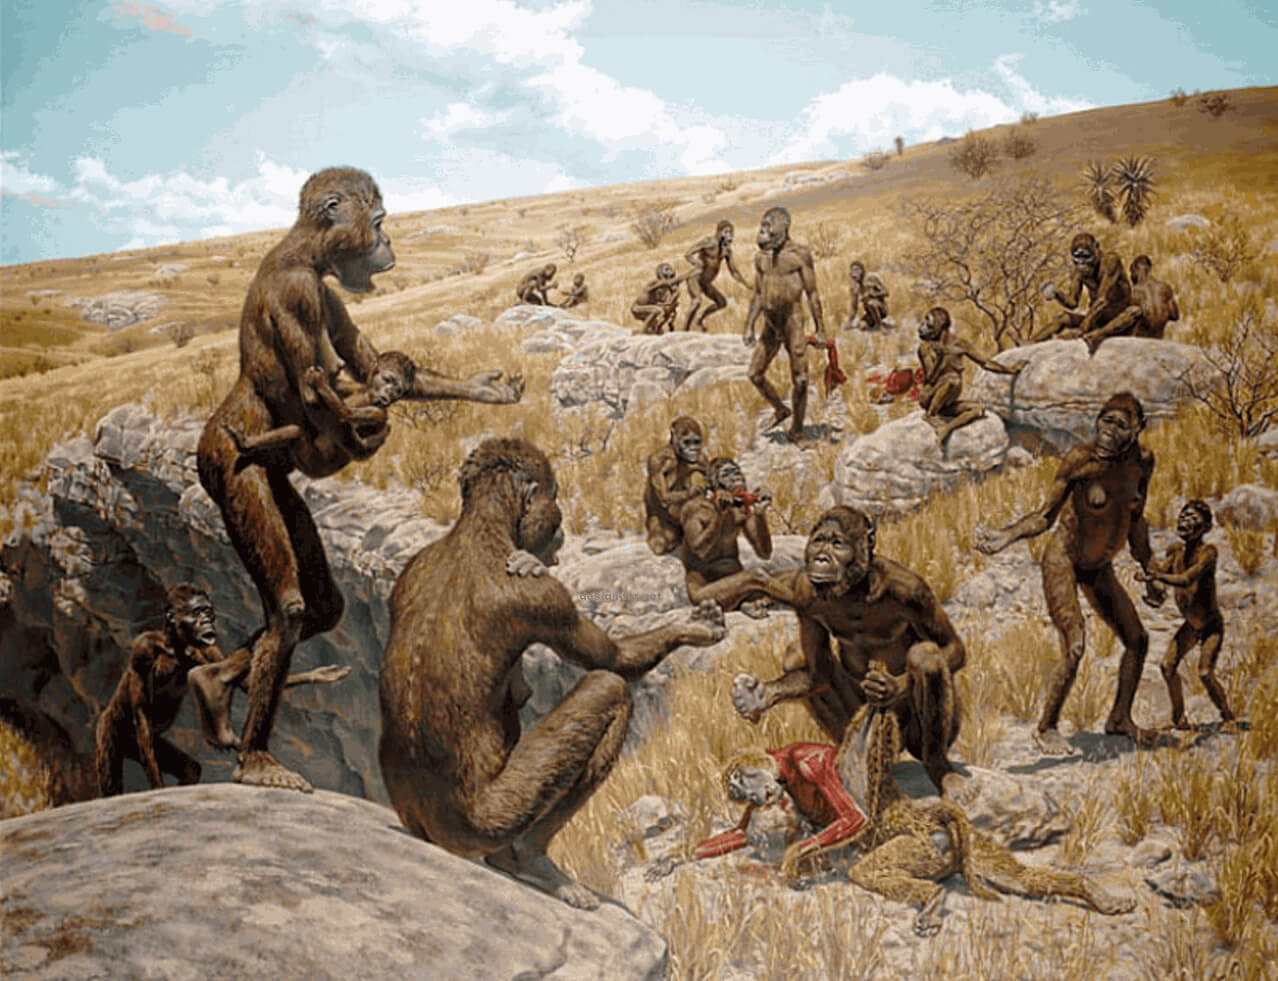 Где предки человека научились ходить на двух ногах. Стопа у предков людей, в любом случае, могла появиться только на земле. Фото.